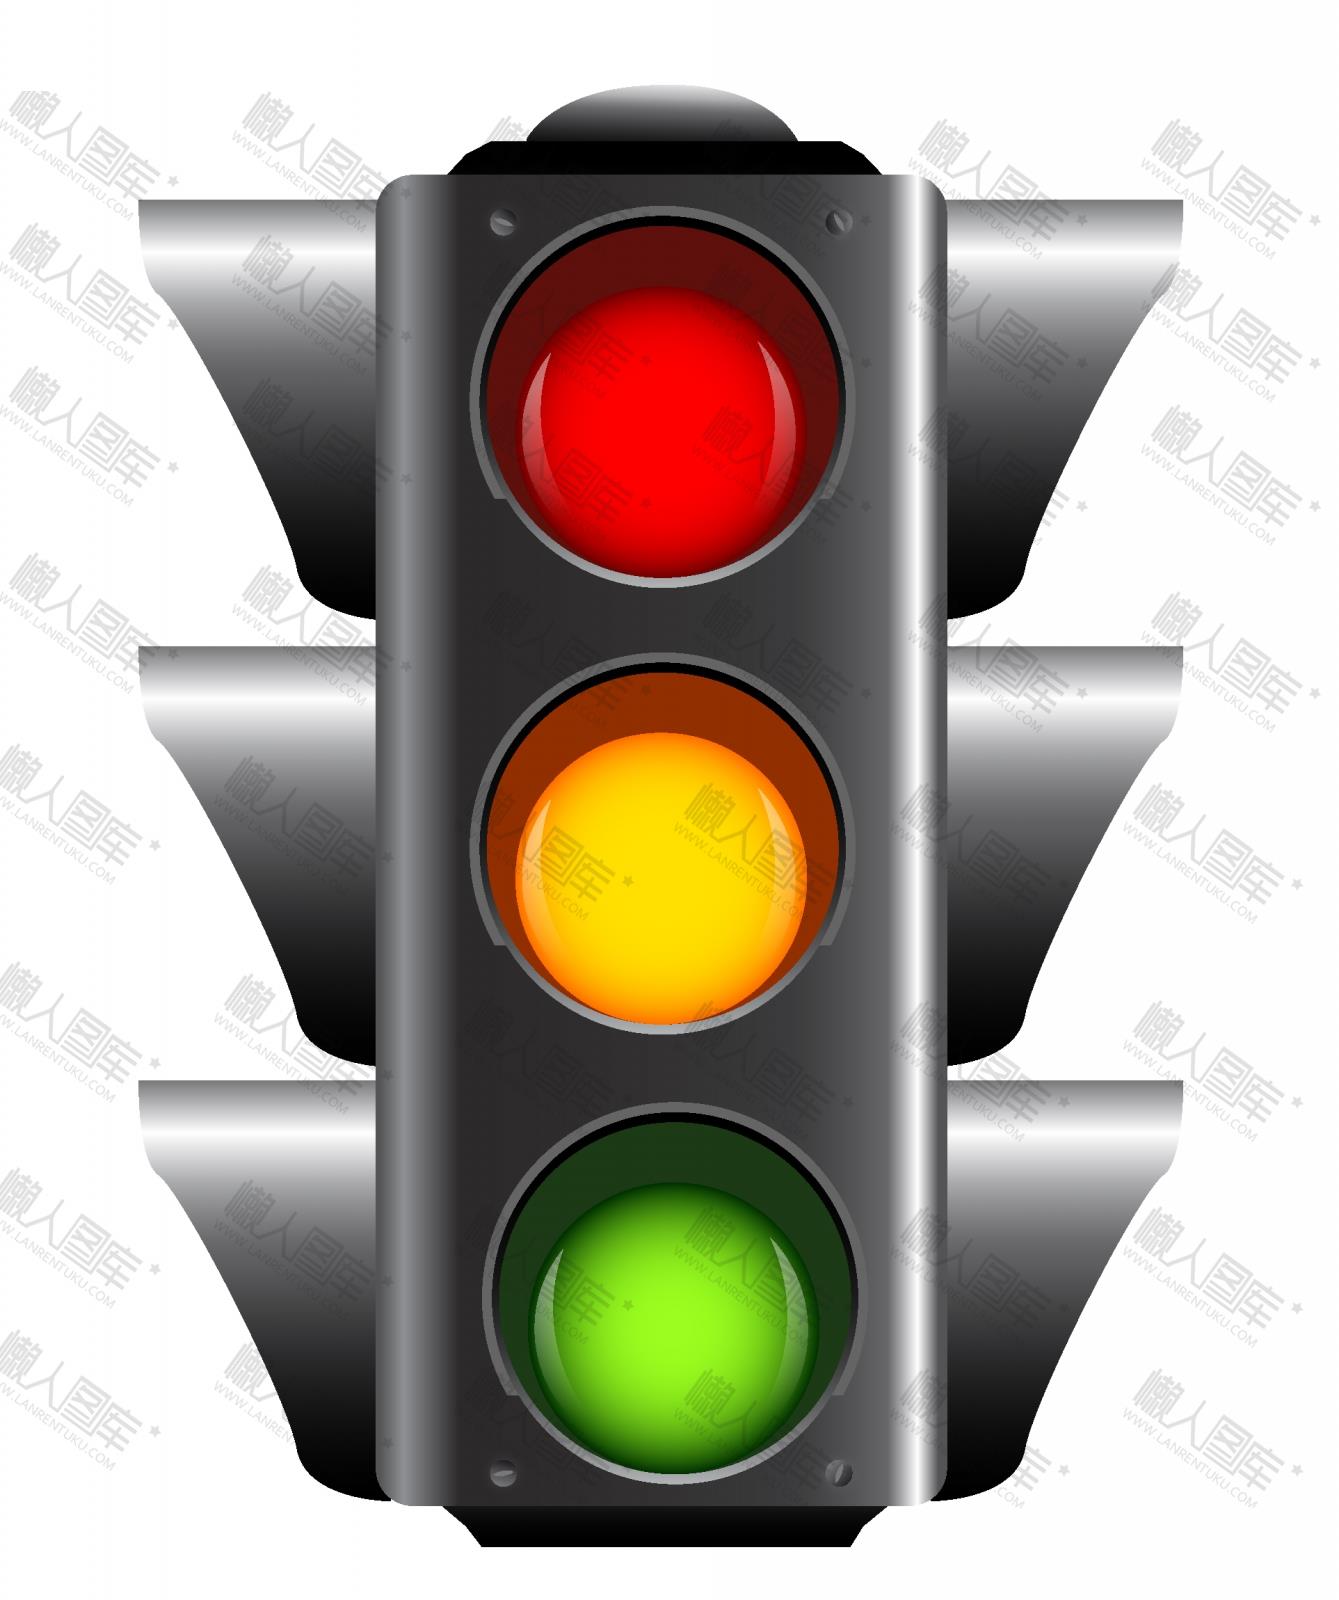 路口红绿灯信号灯图片